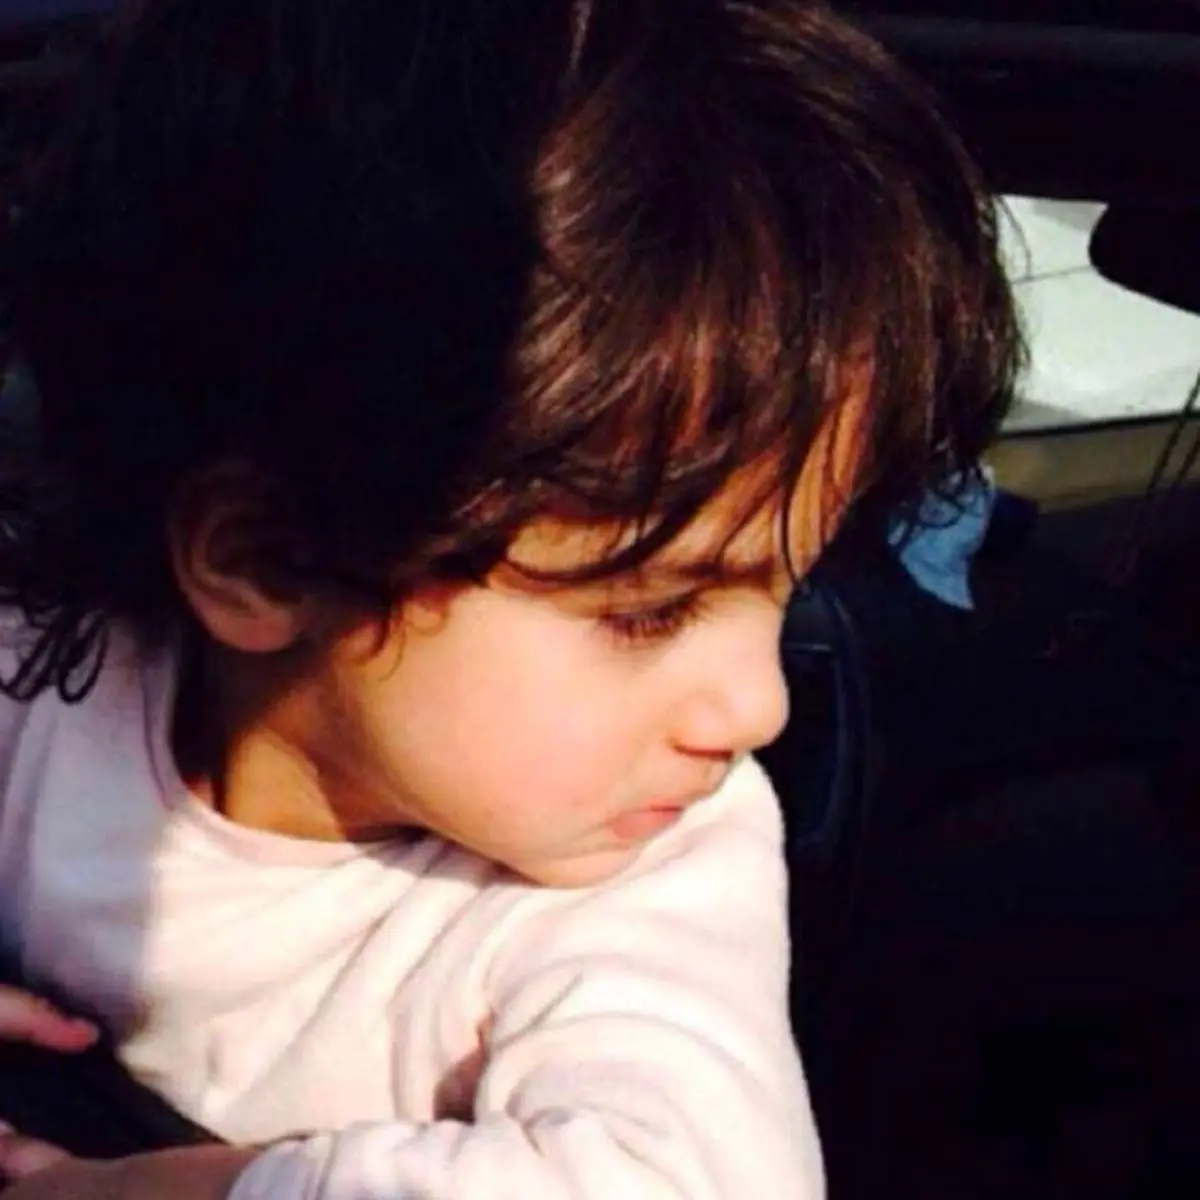 جزئیات قتل بی رحمانه کودک 6 ساله شیعه در مدینه + عکس